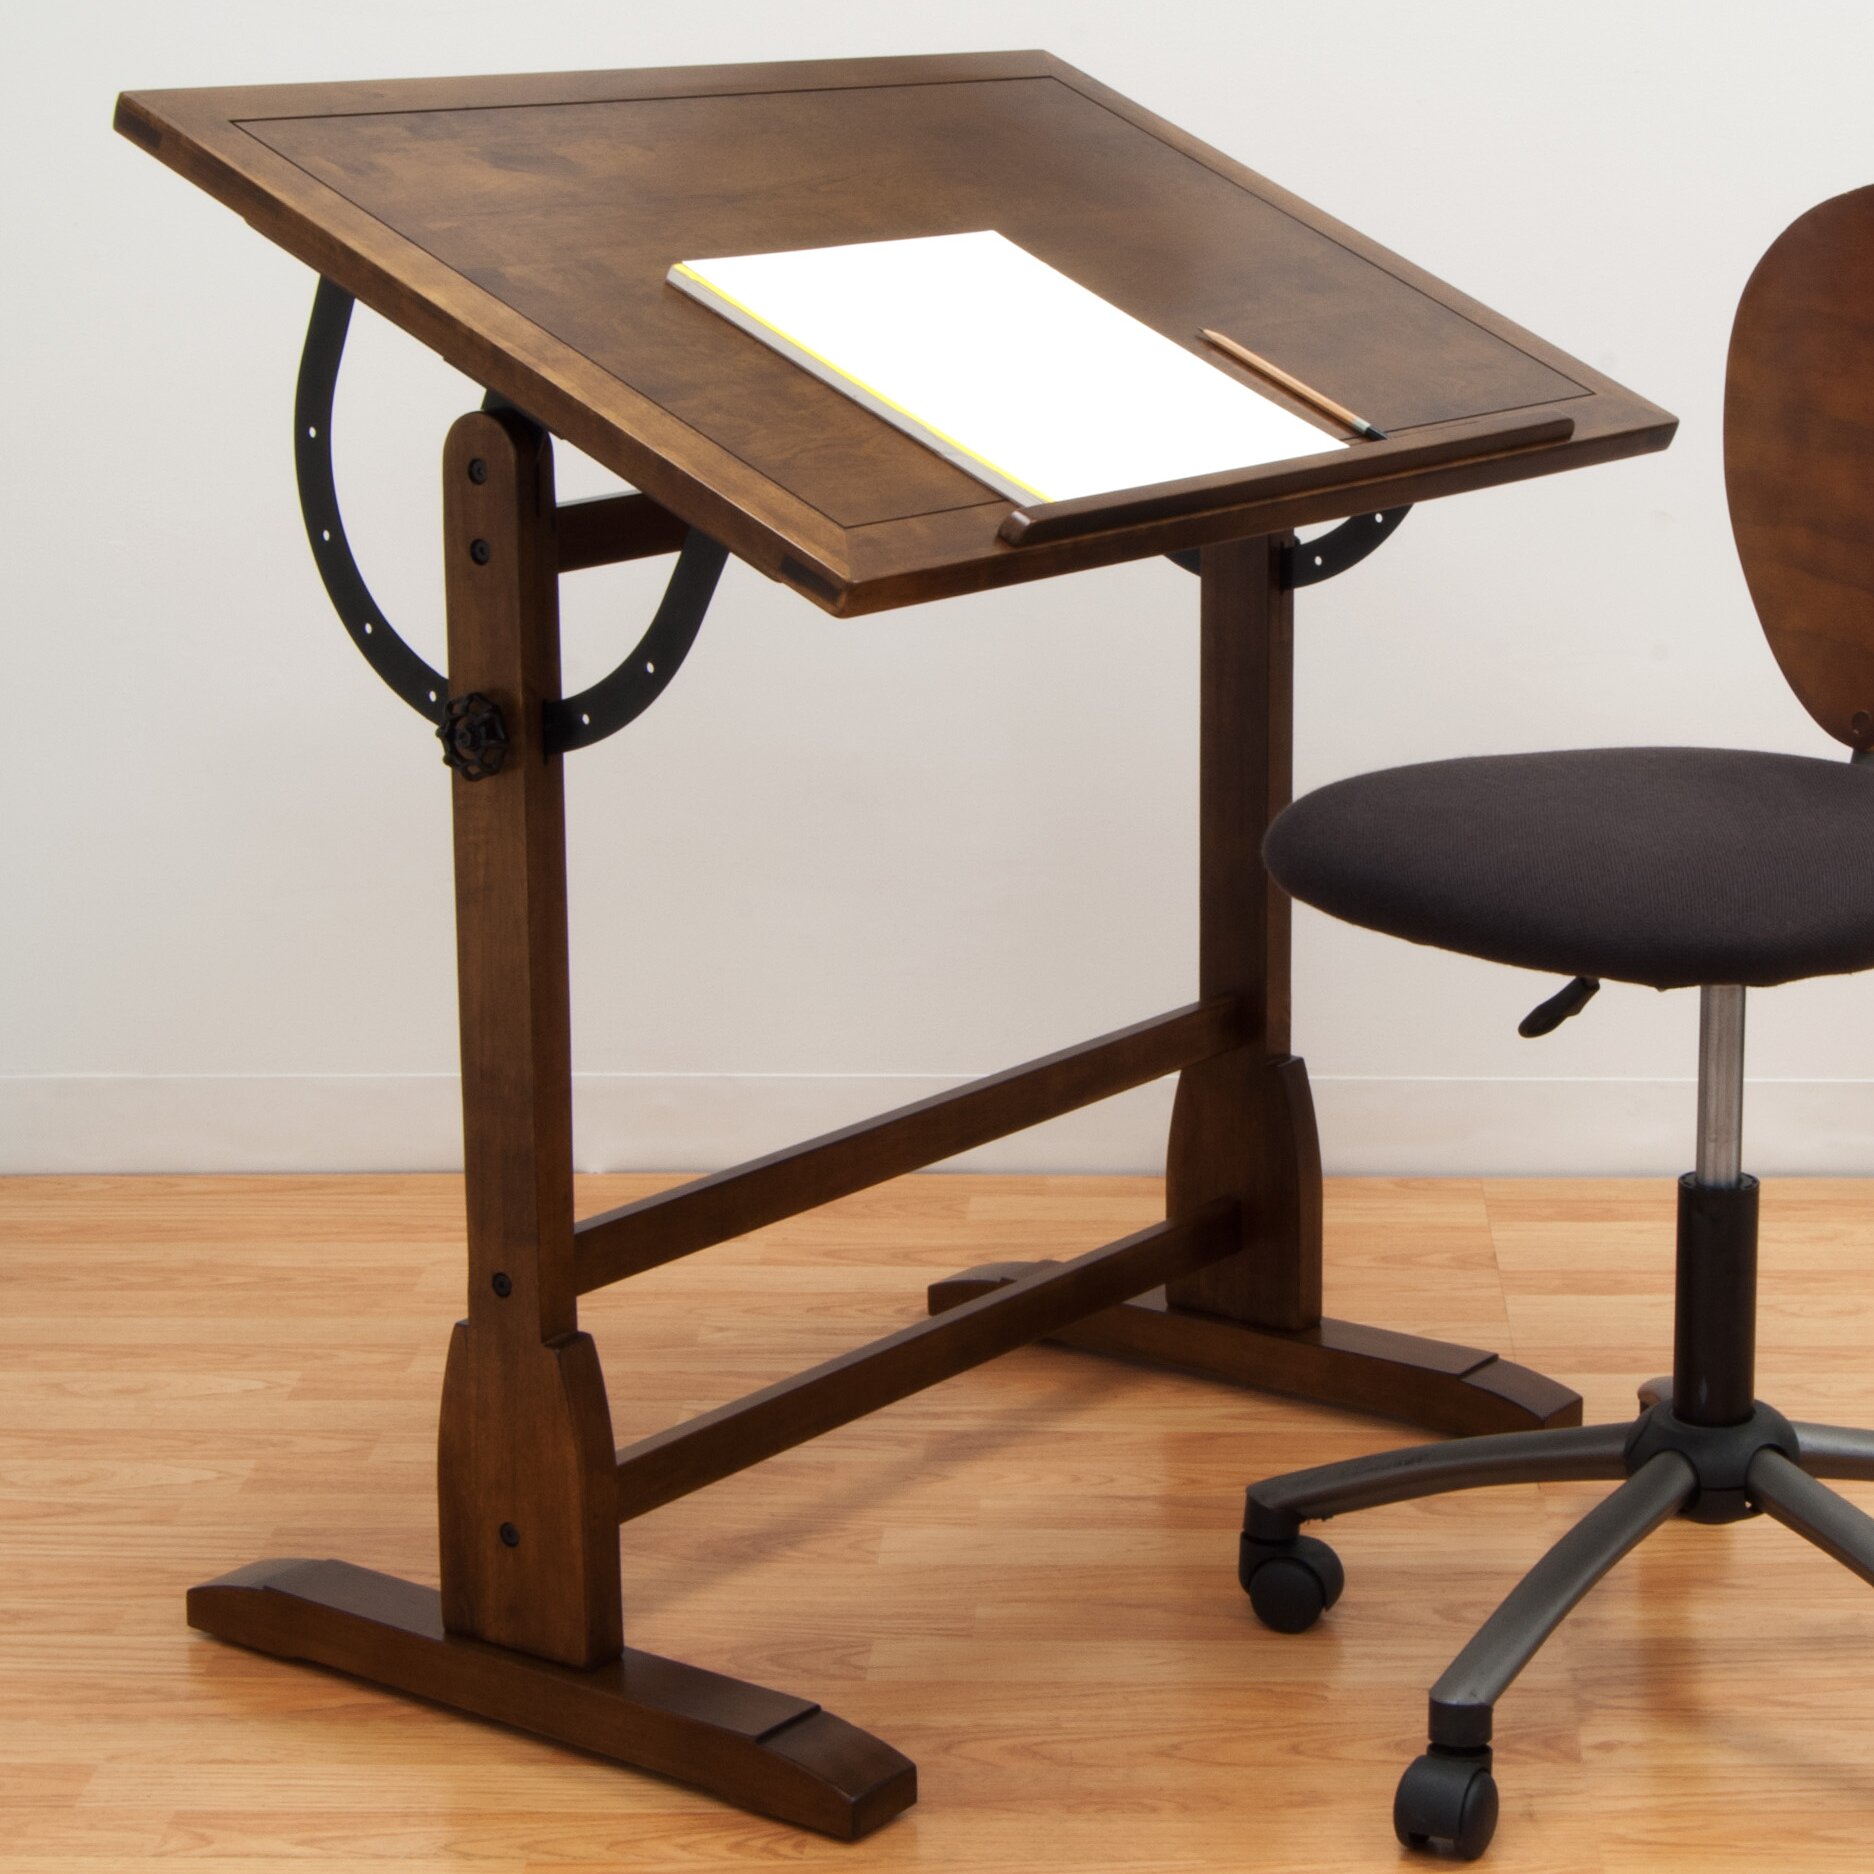 Studio Designs Vintage Wood Drafting Table Reviews Wayfair